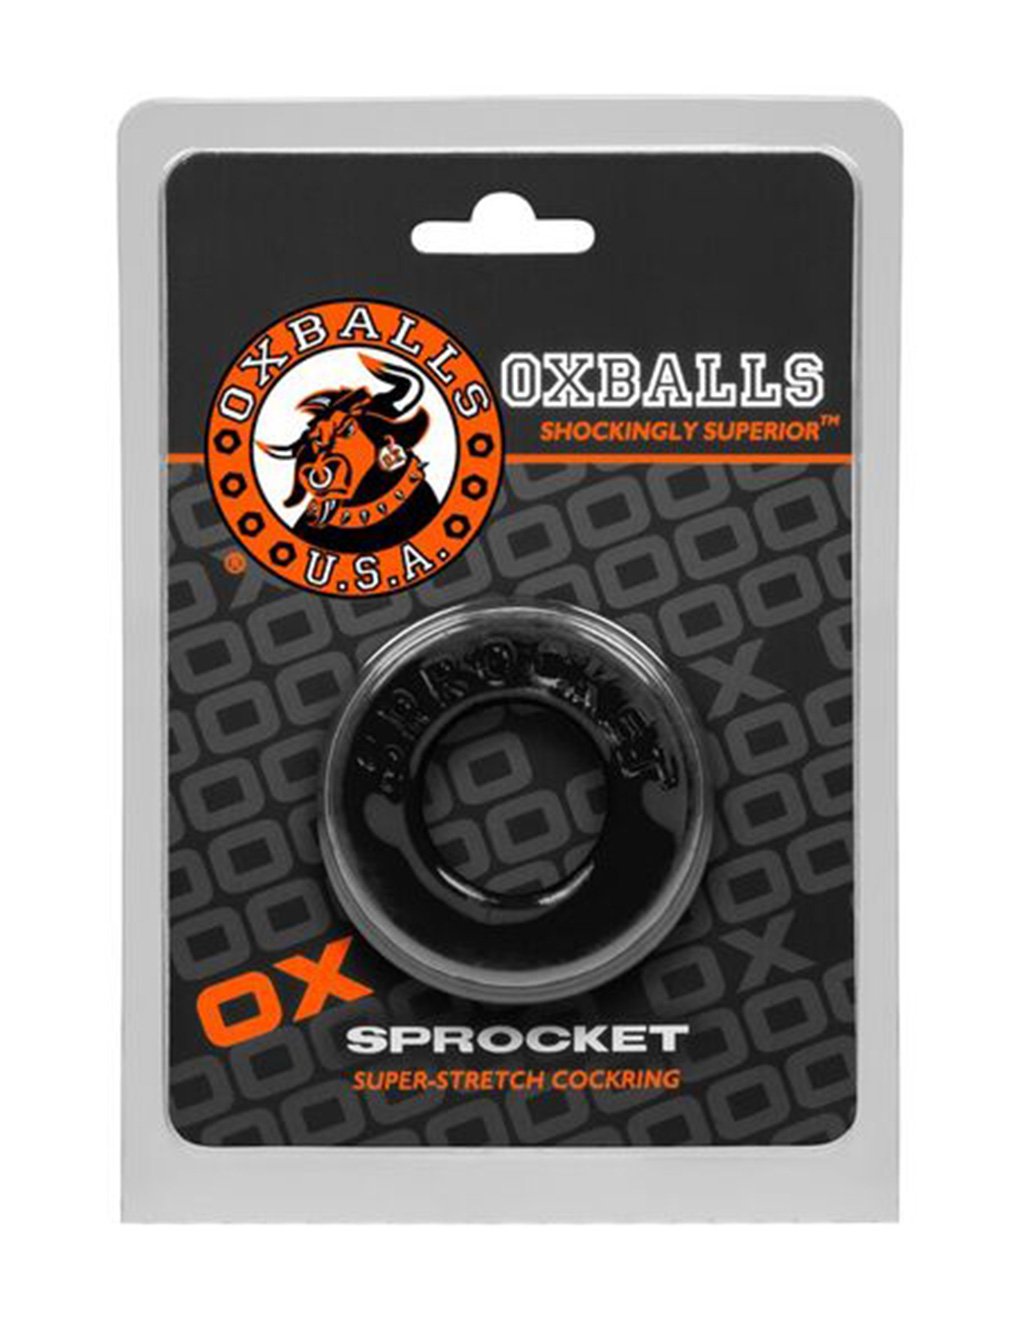 Oxballs Sprocket Cockring- Black- Package